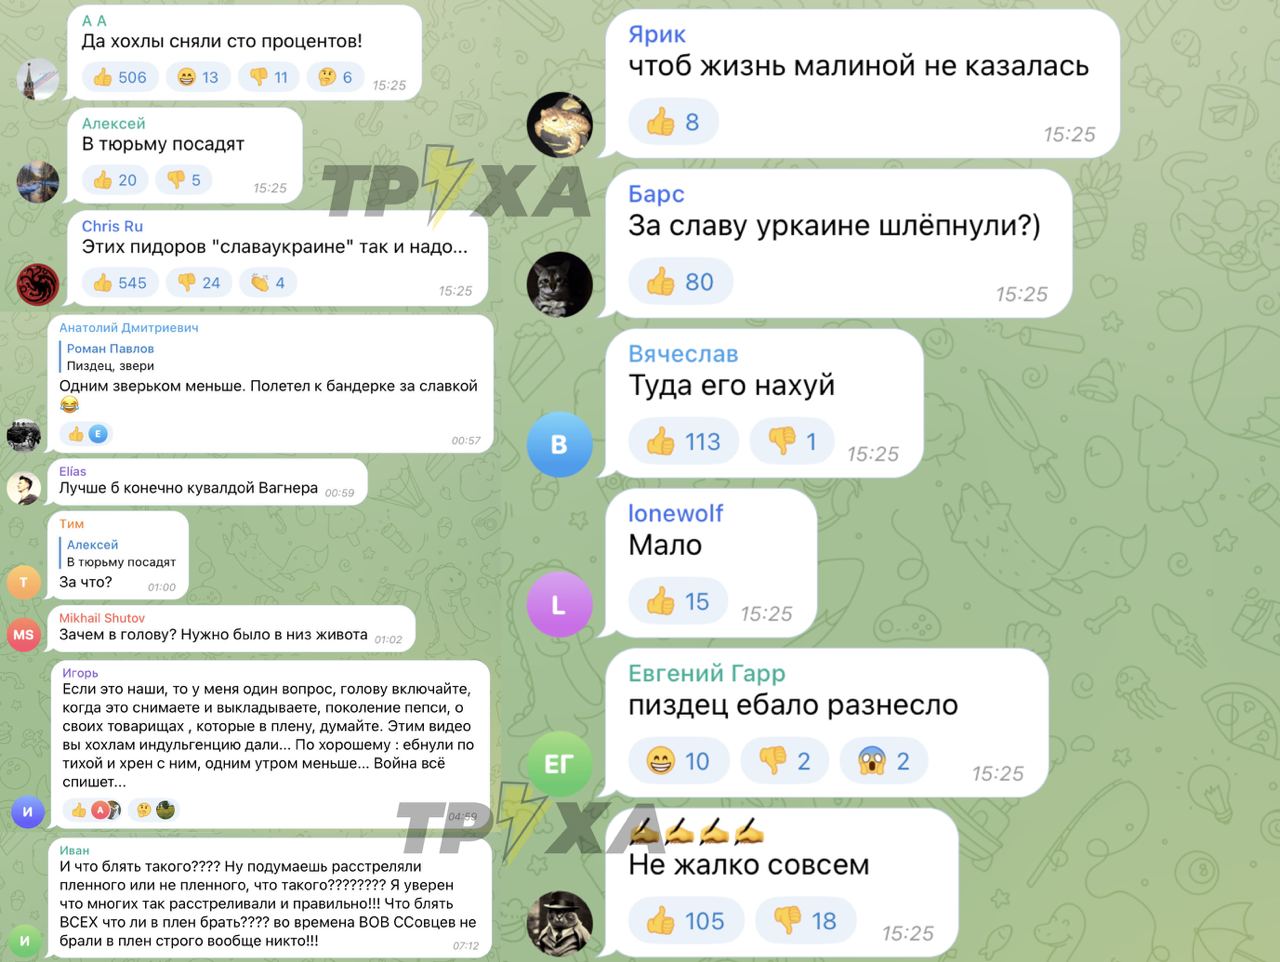 Труха телеграмм украина на русском языке смотреть онлайн бесплатно фото 59